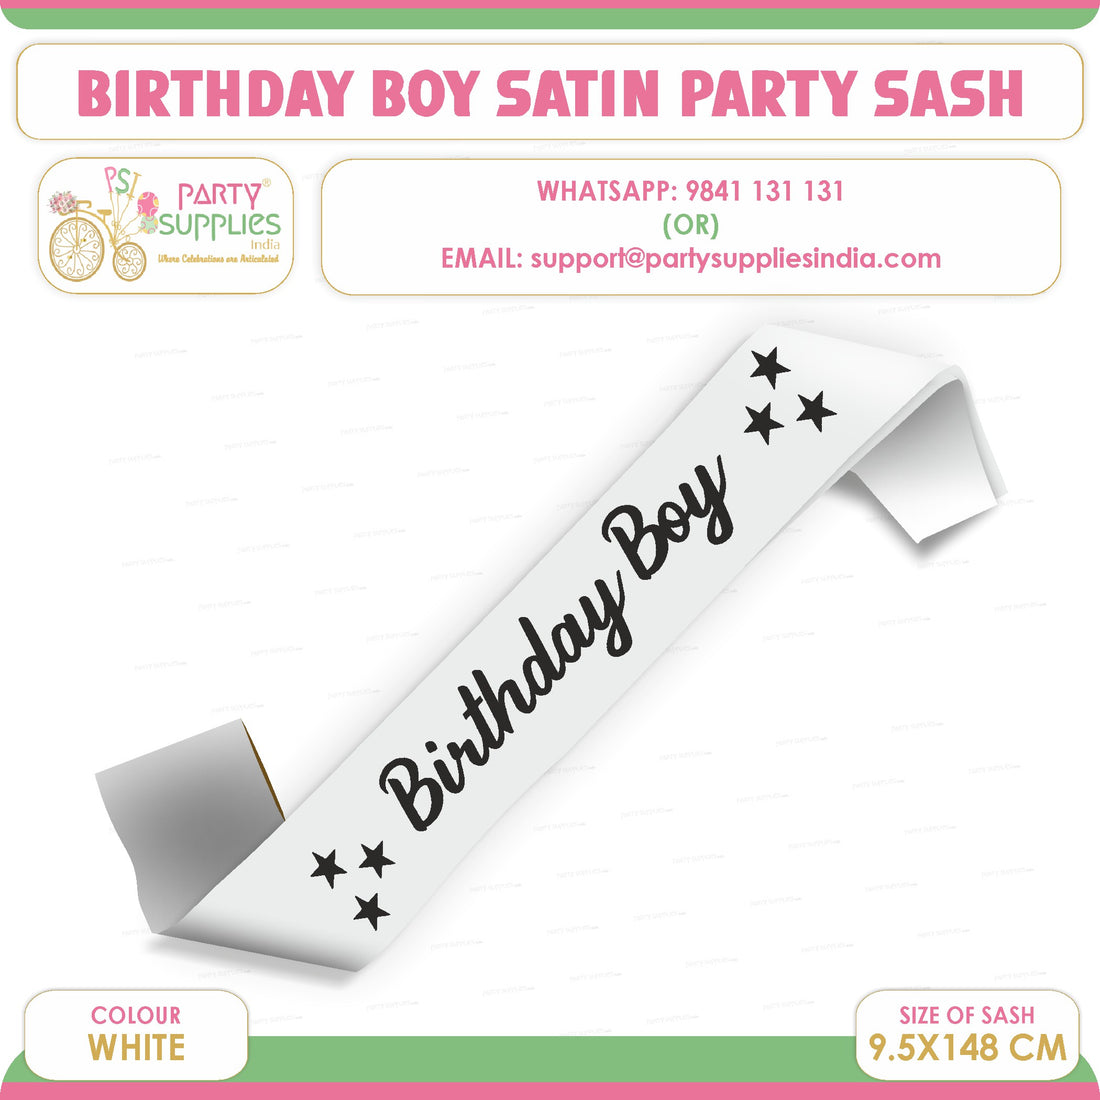 PSI Birthday Boy White with Black Satin Party Sash